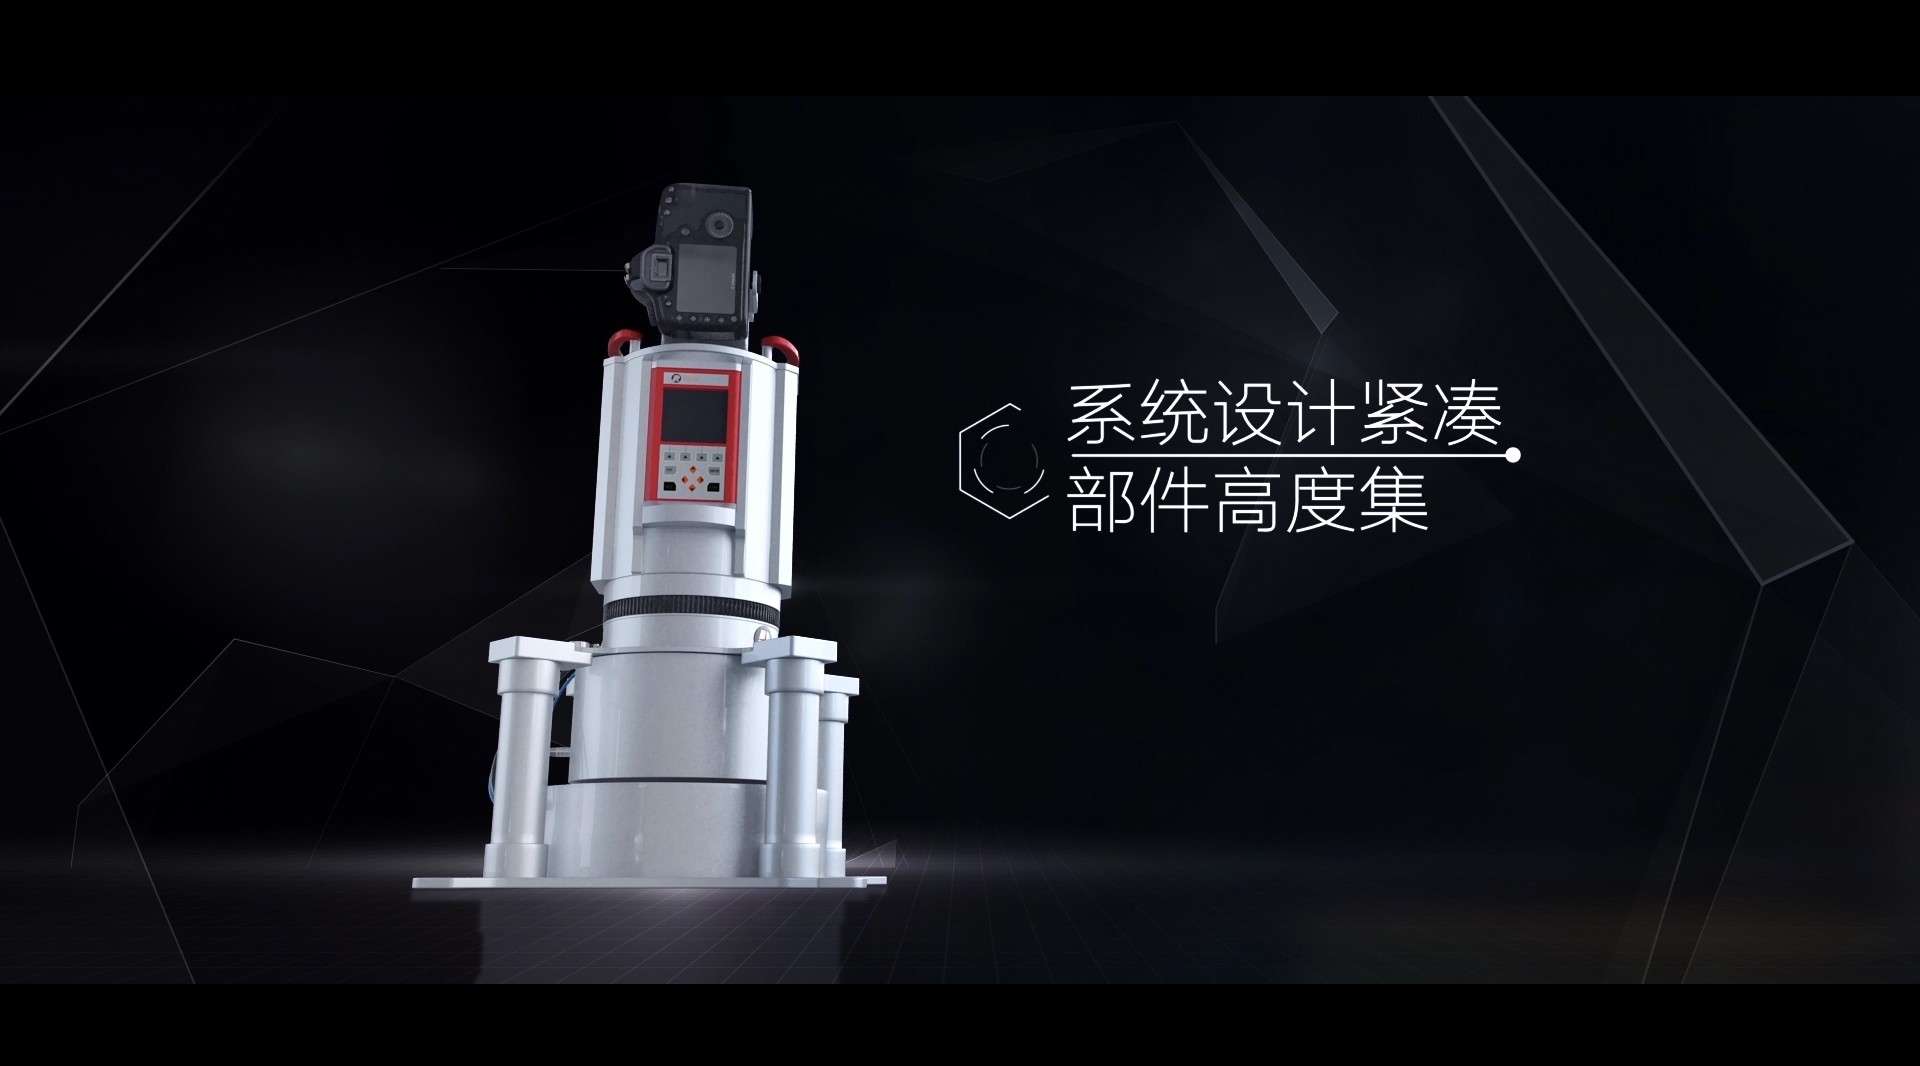 SZT-R1400移动测量系统高端产品动画